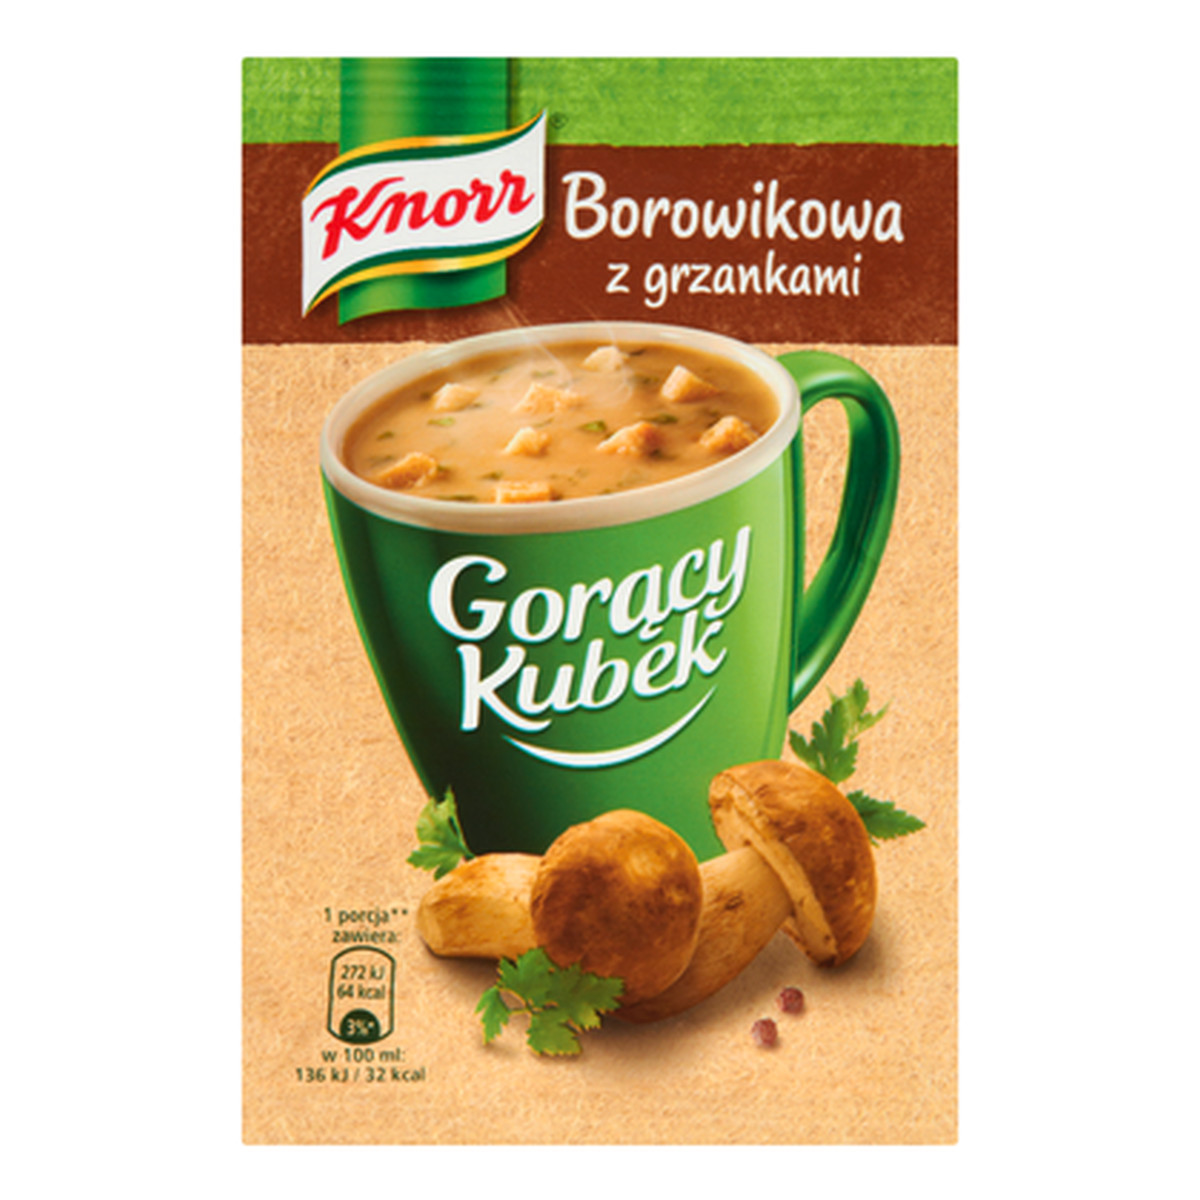 Knorr Gorący Kubek Borowikowa z grzankami 15g